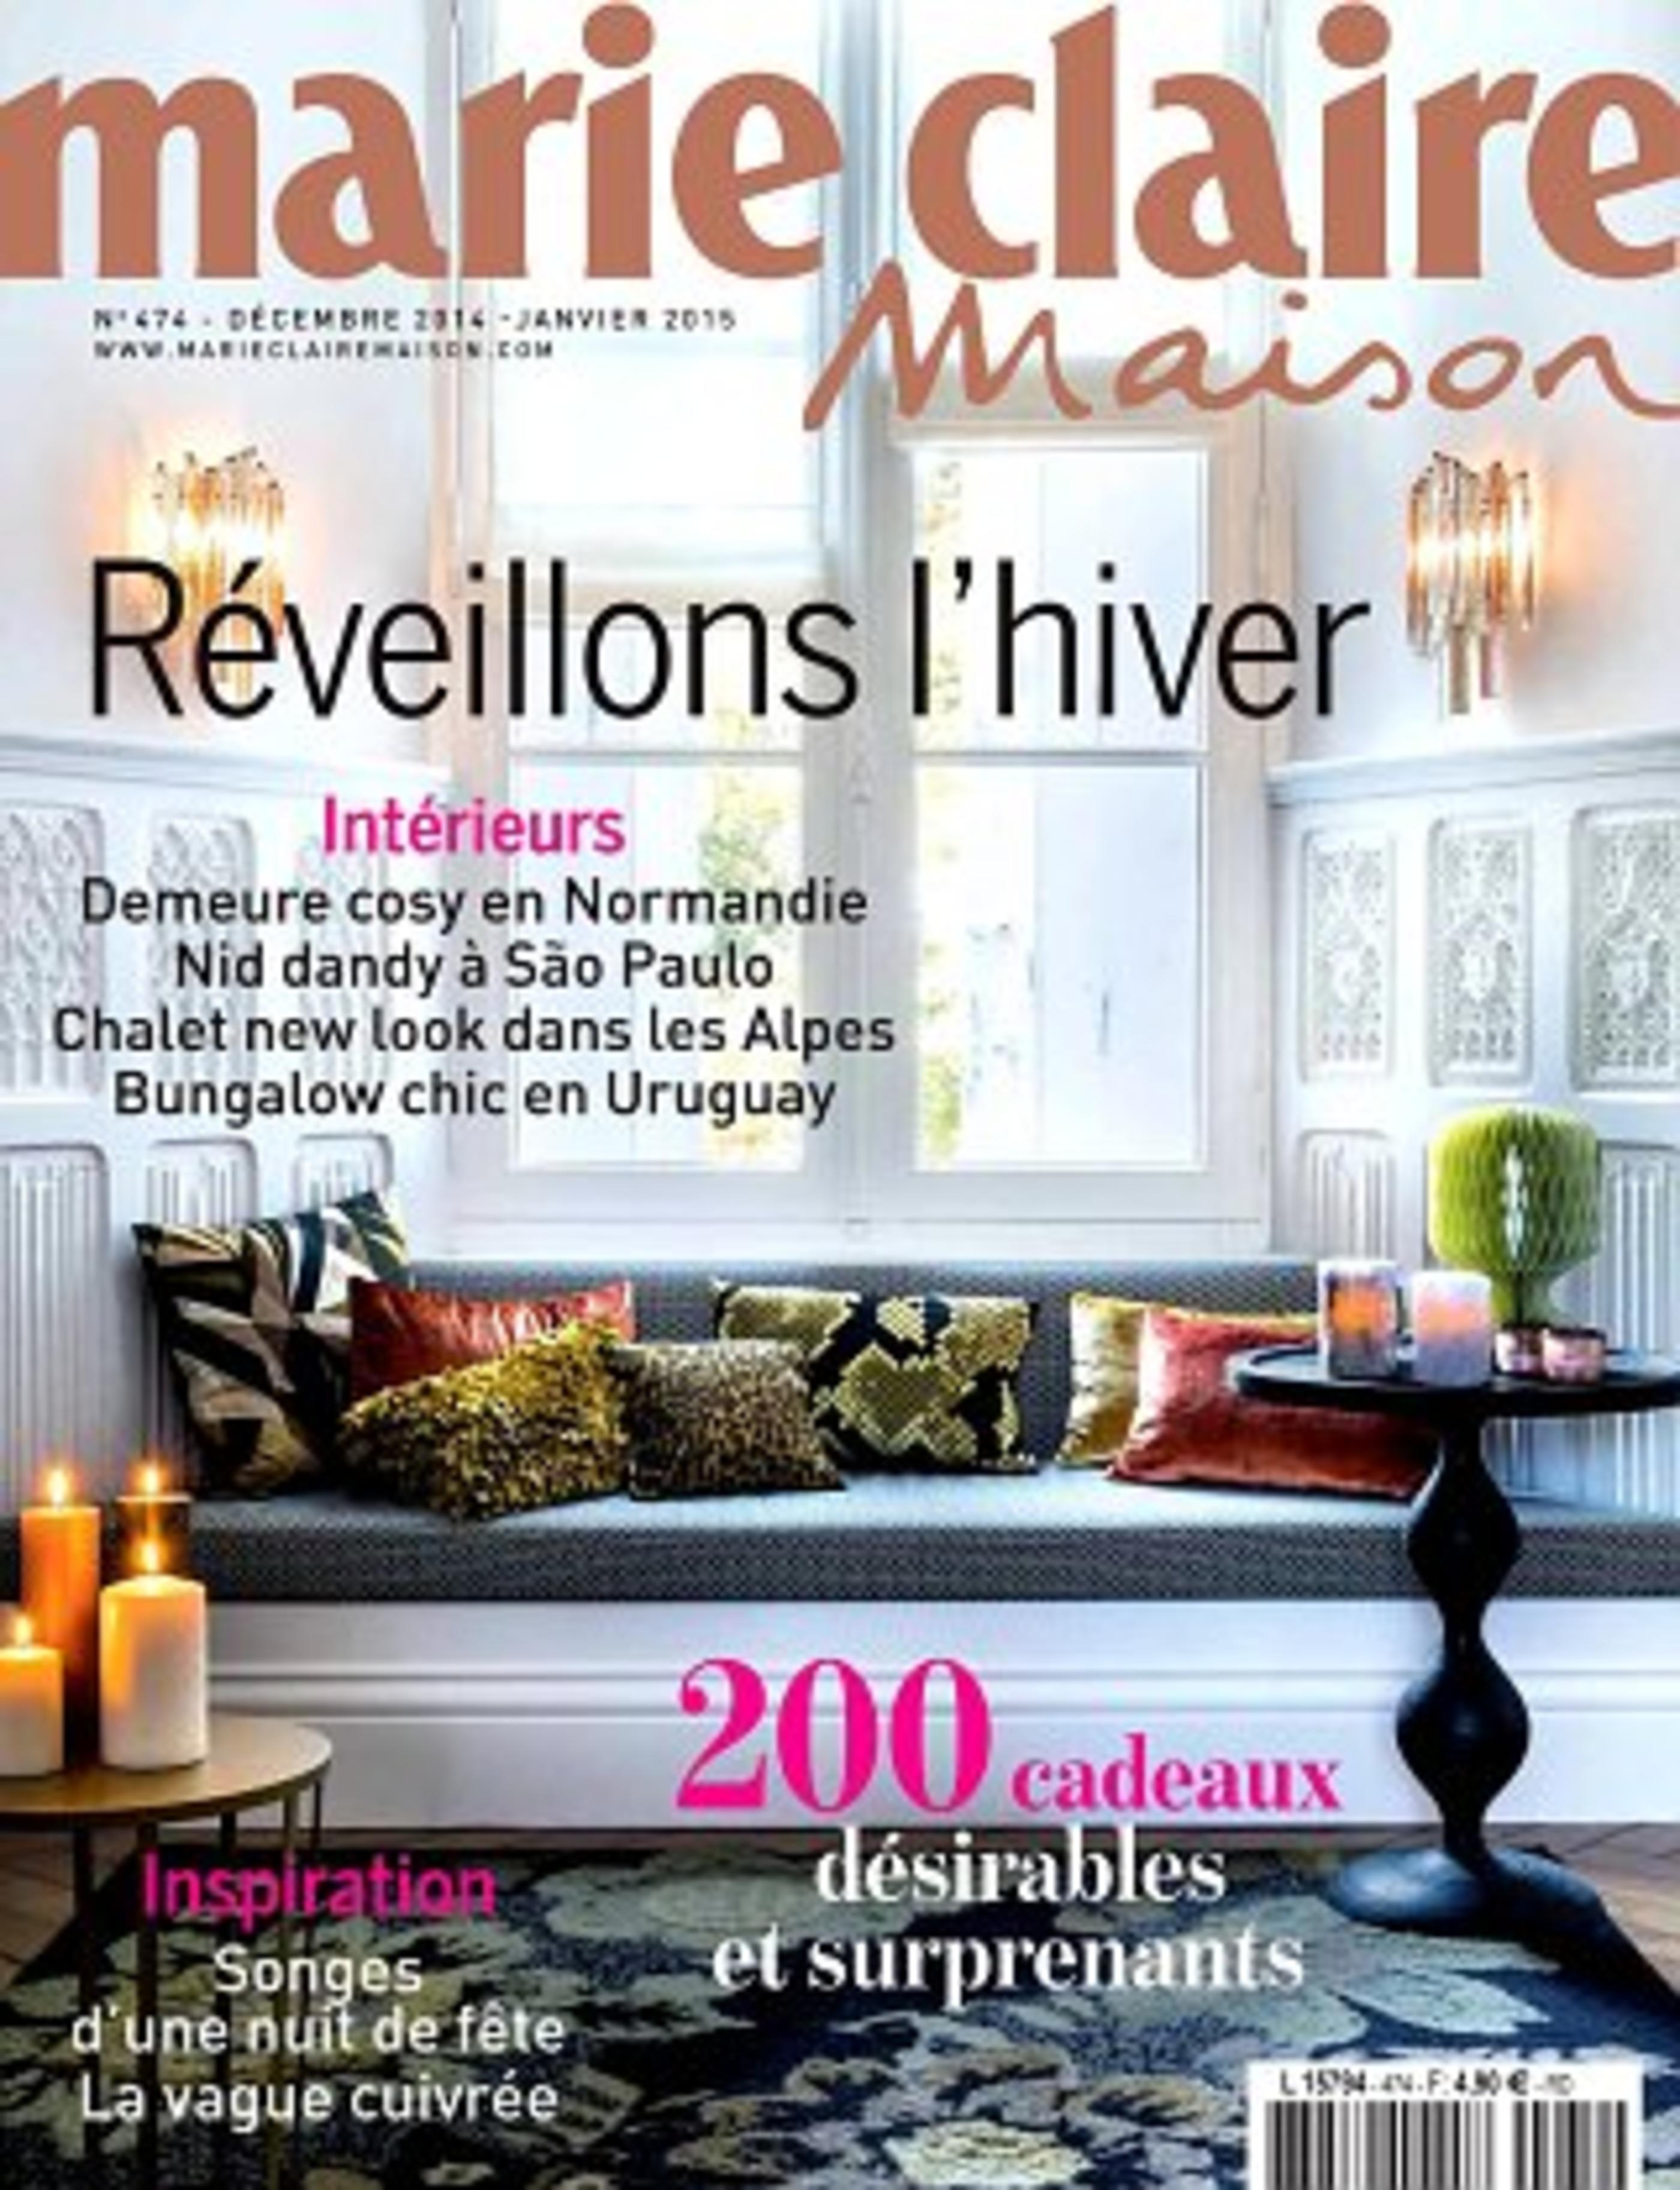 Marie Claire Maison - Décembre 2014